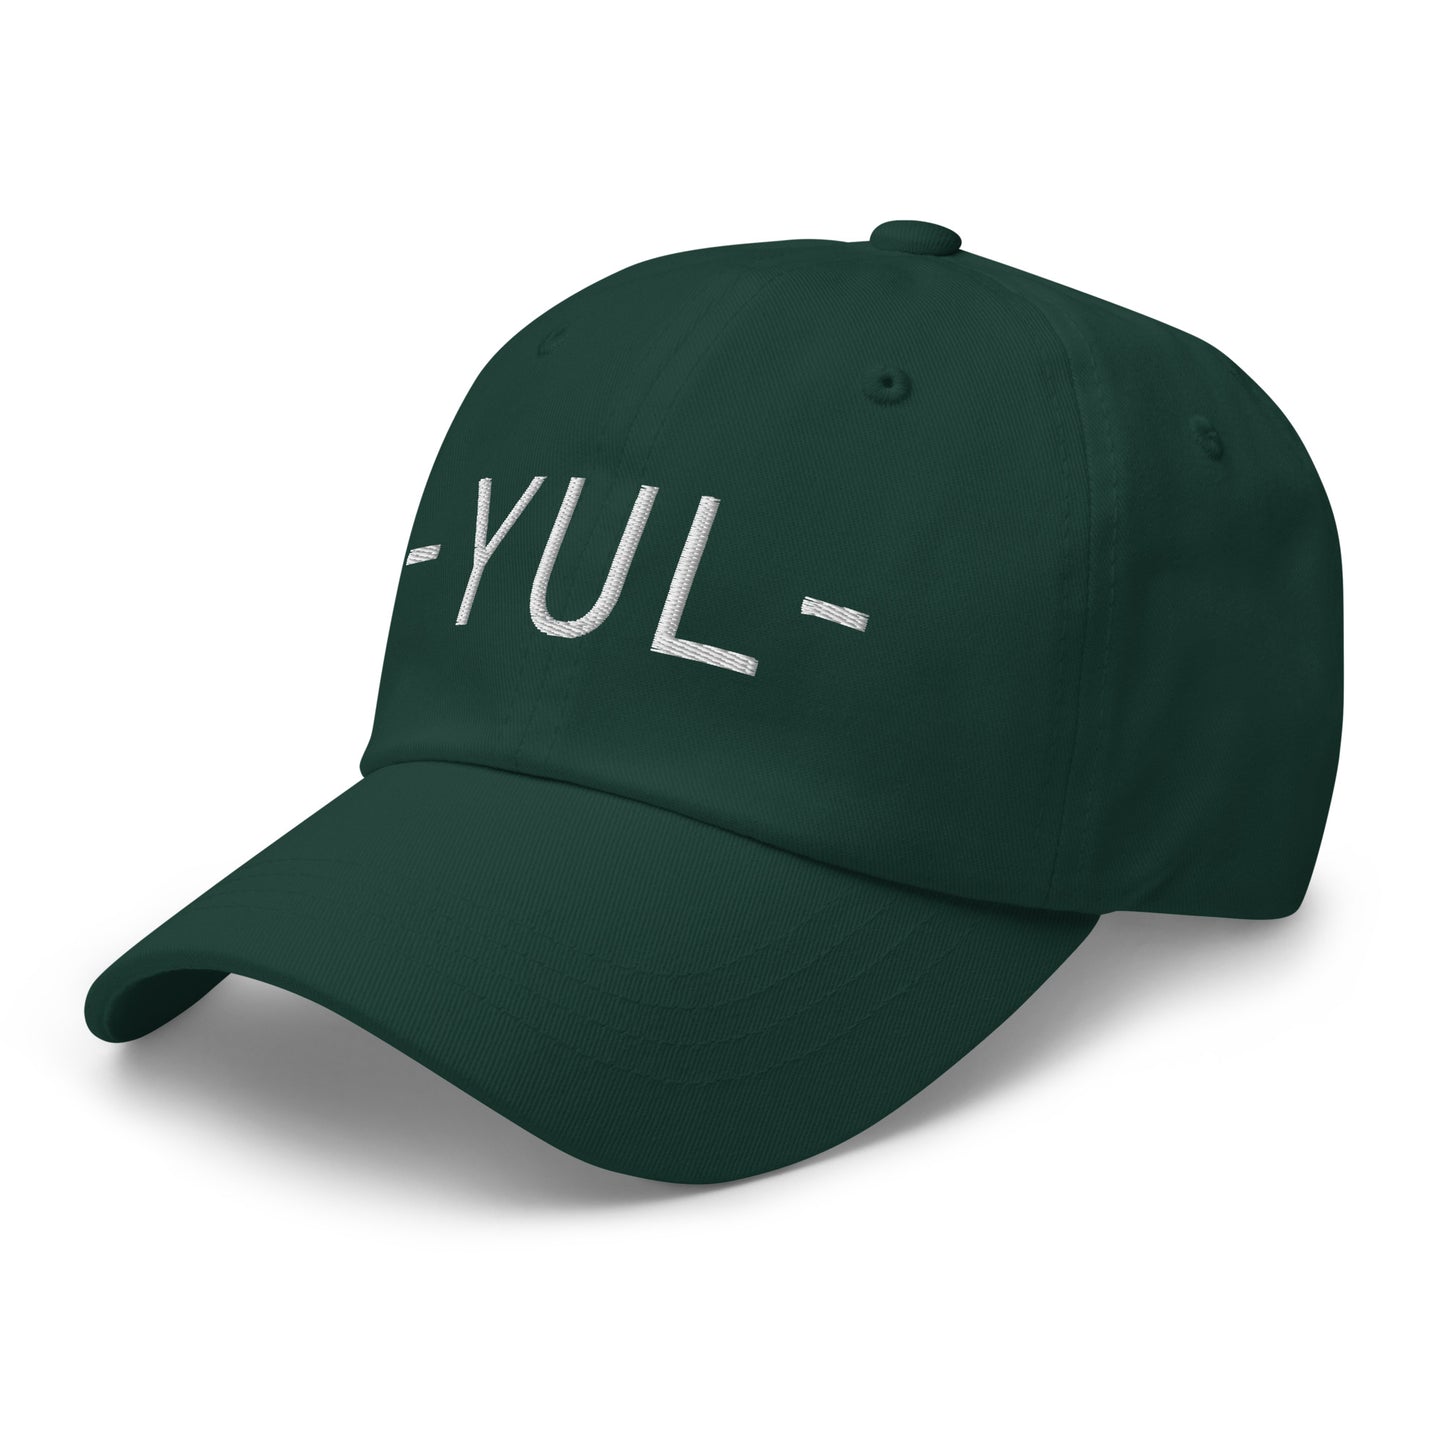 Souvenir Baseball Cap - White • YUL Montreal • YHM Designs - Image 18